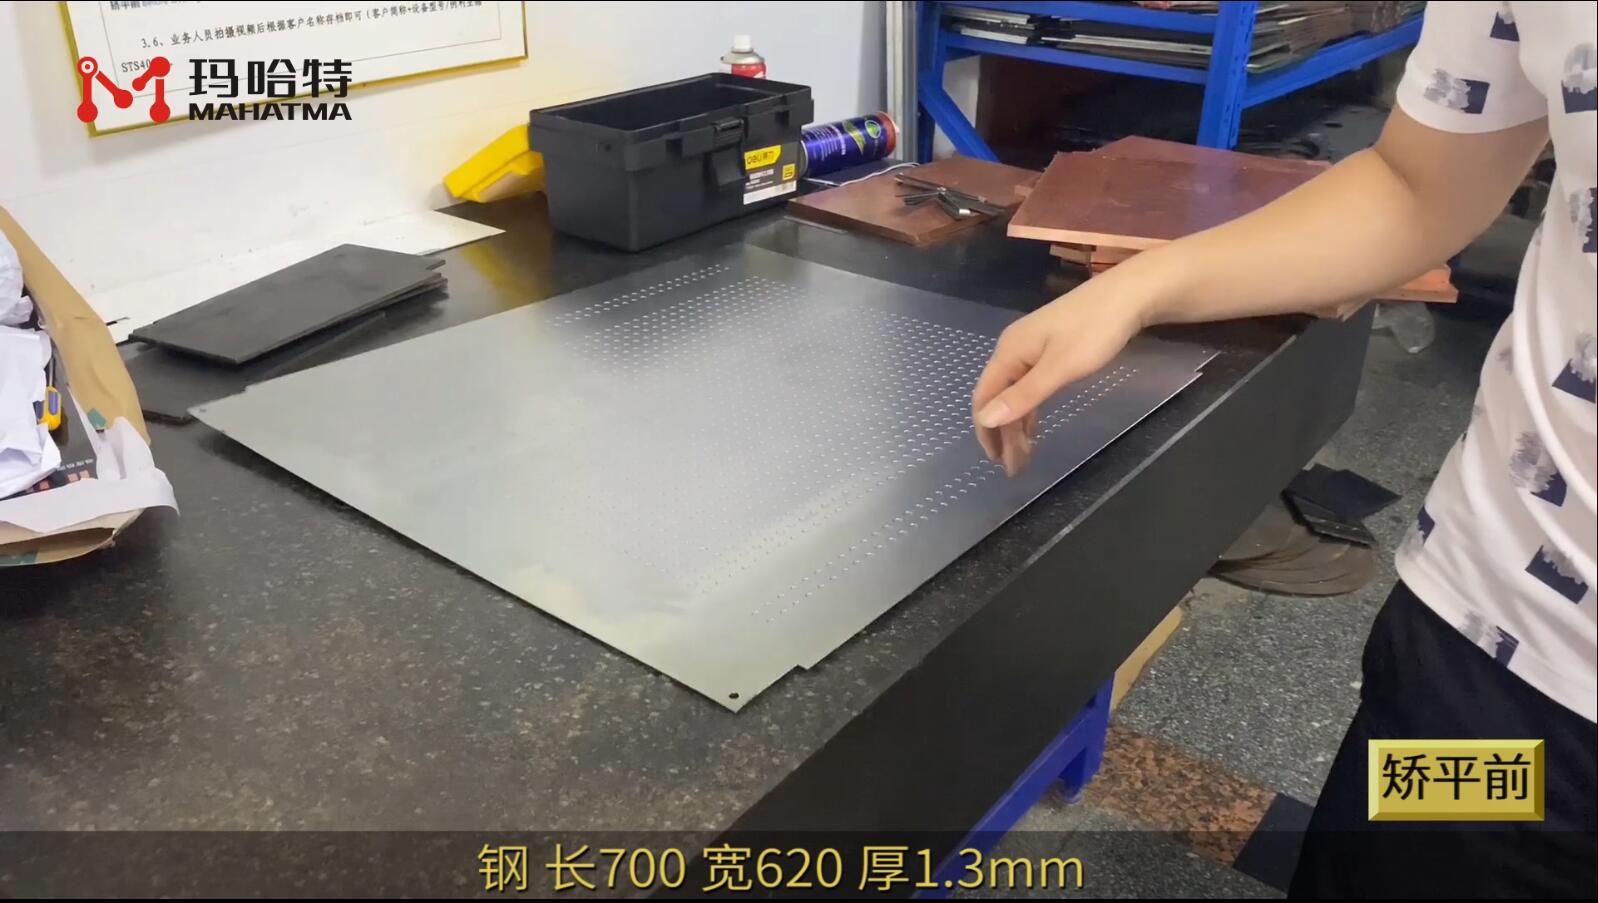 不锈钢网板 MHT40-1650 长方形 长700宽620厚1.3mm